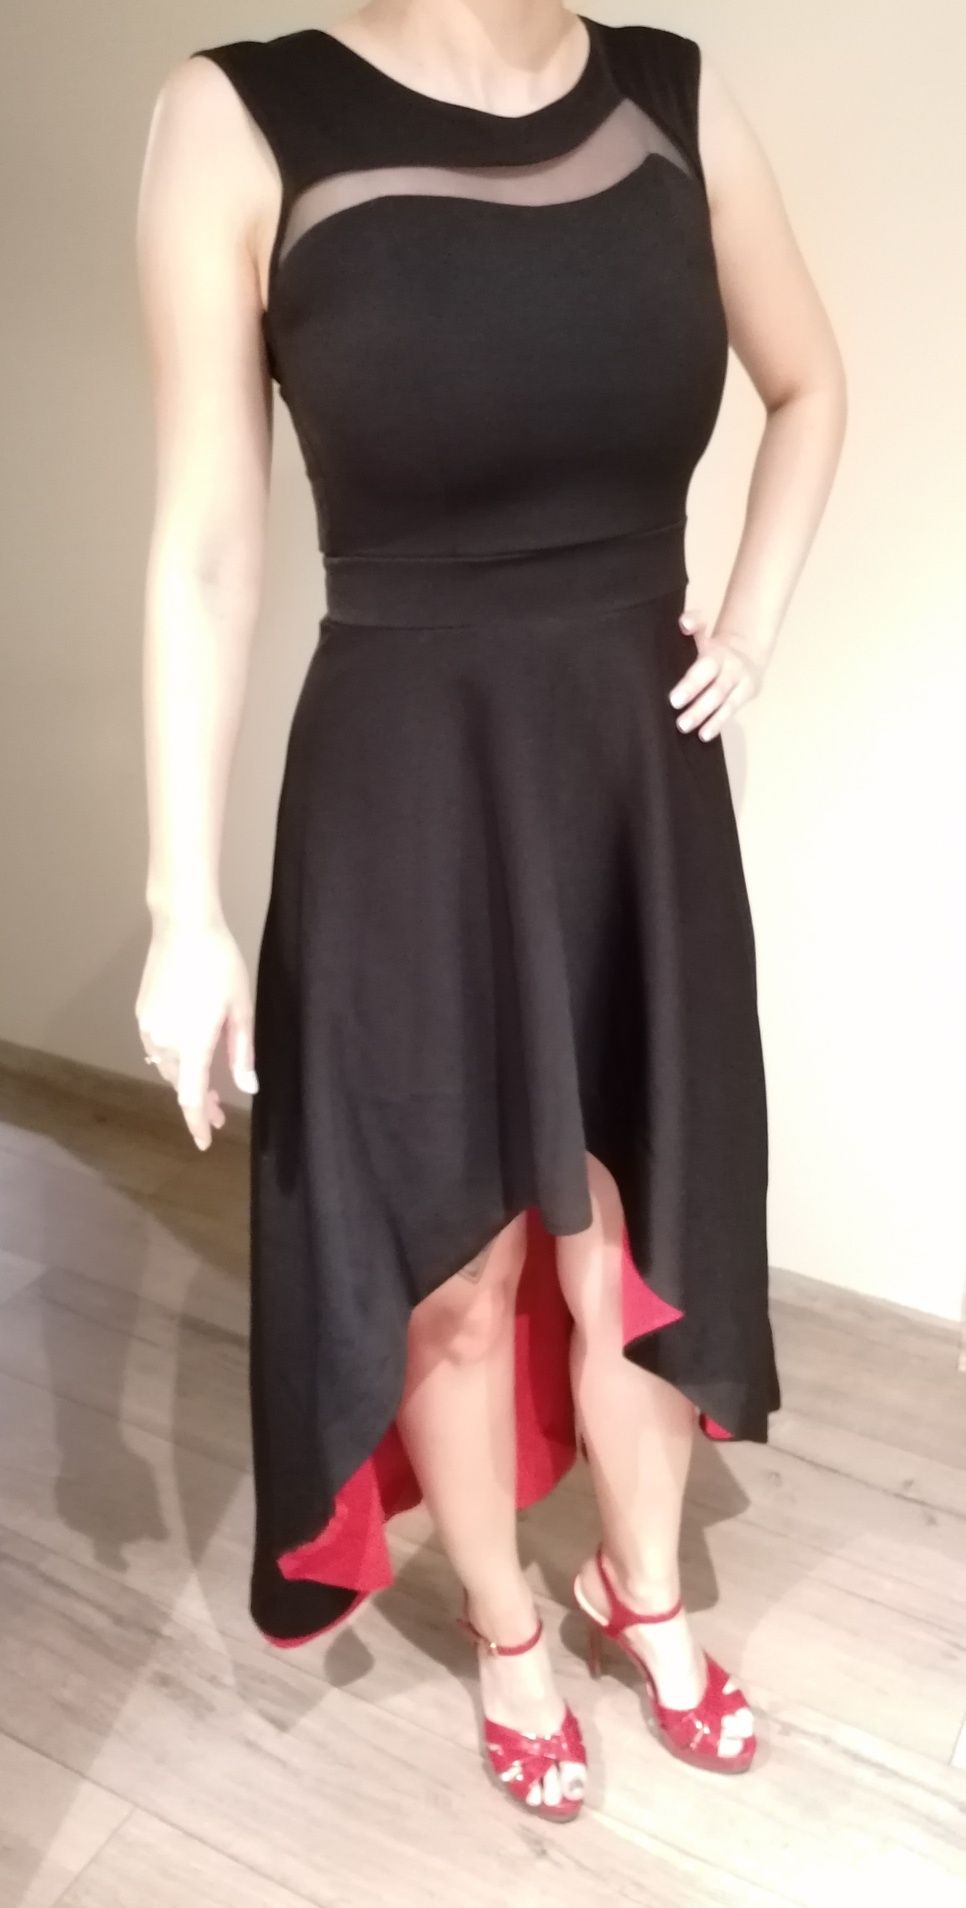 Długa, czarna suknia z czerwoną podszewką